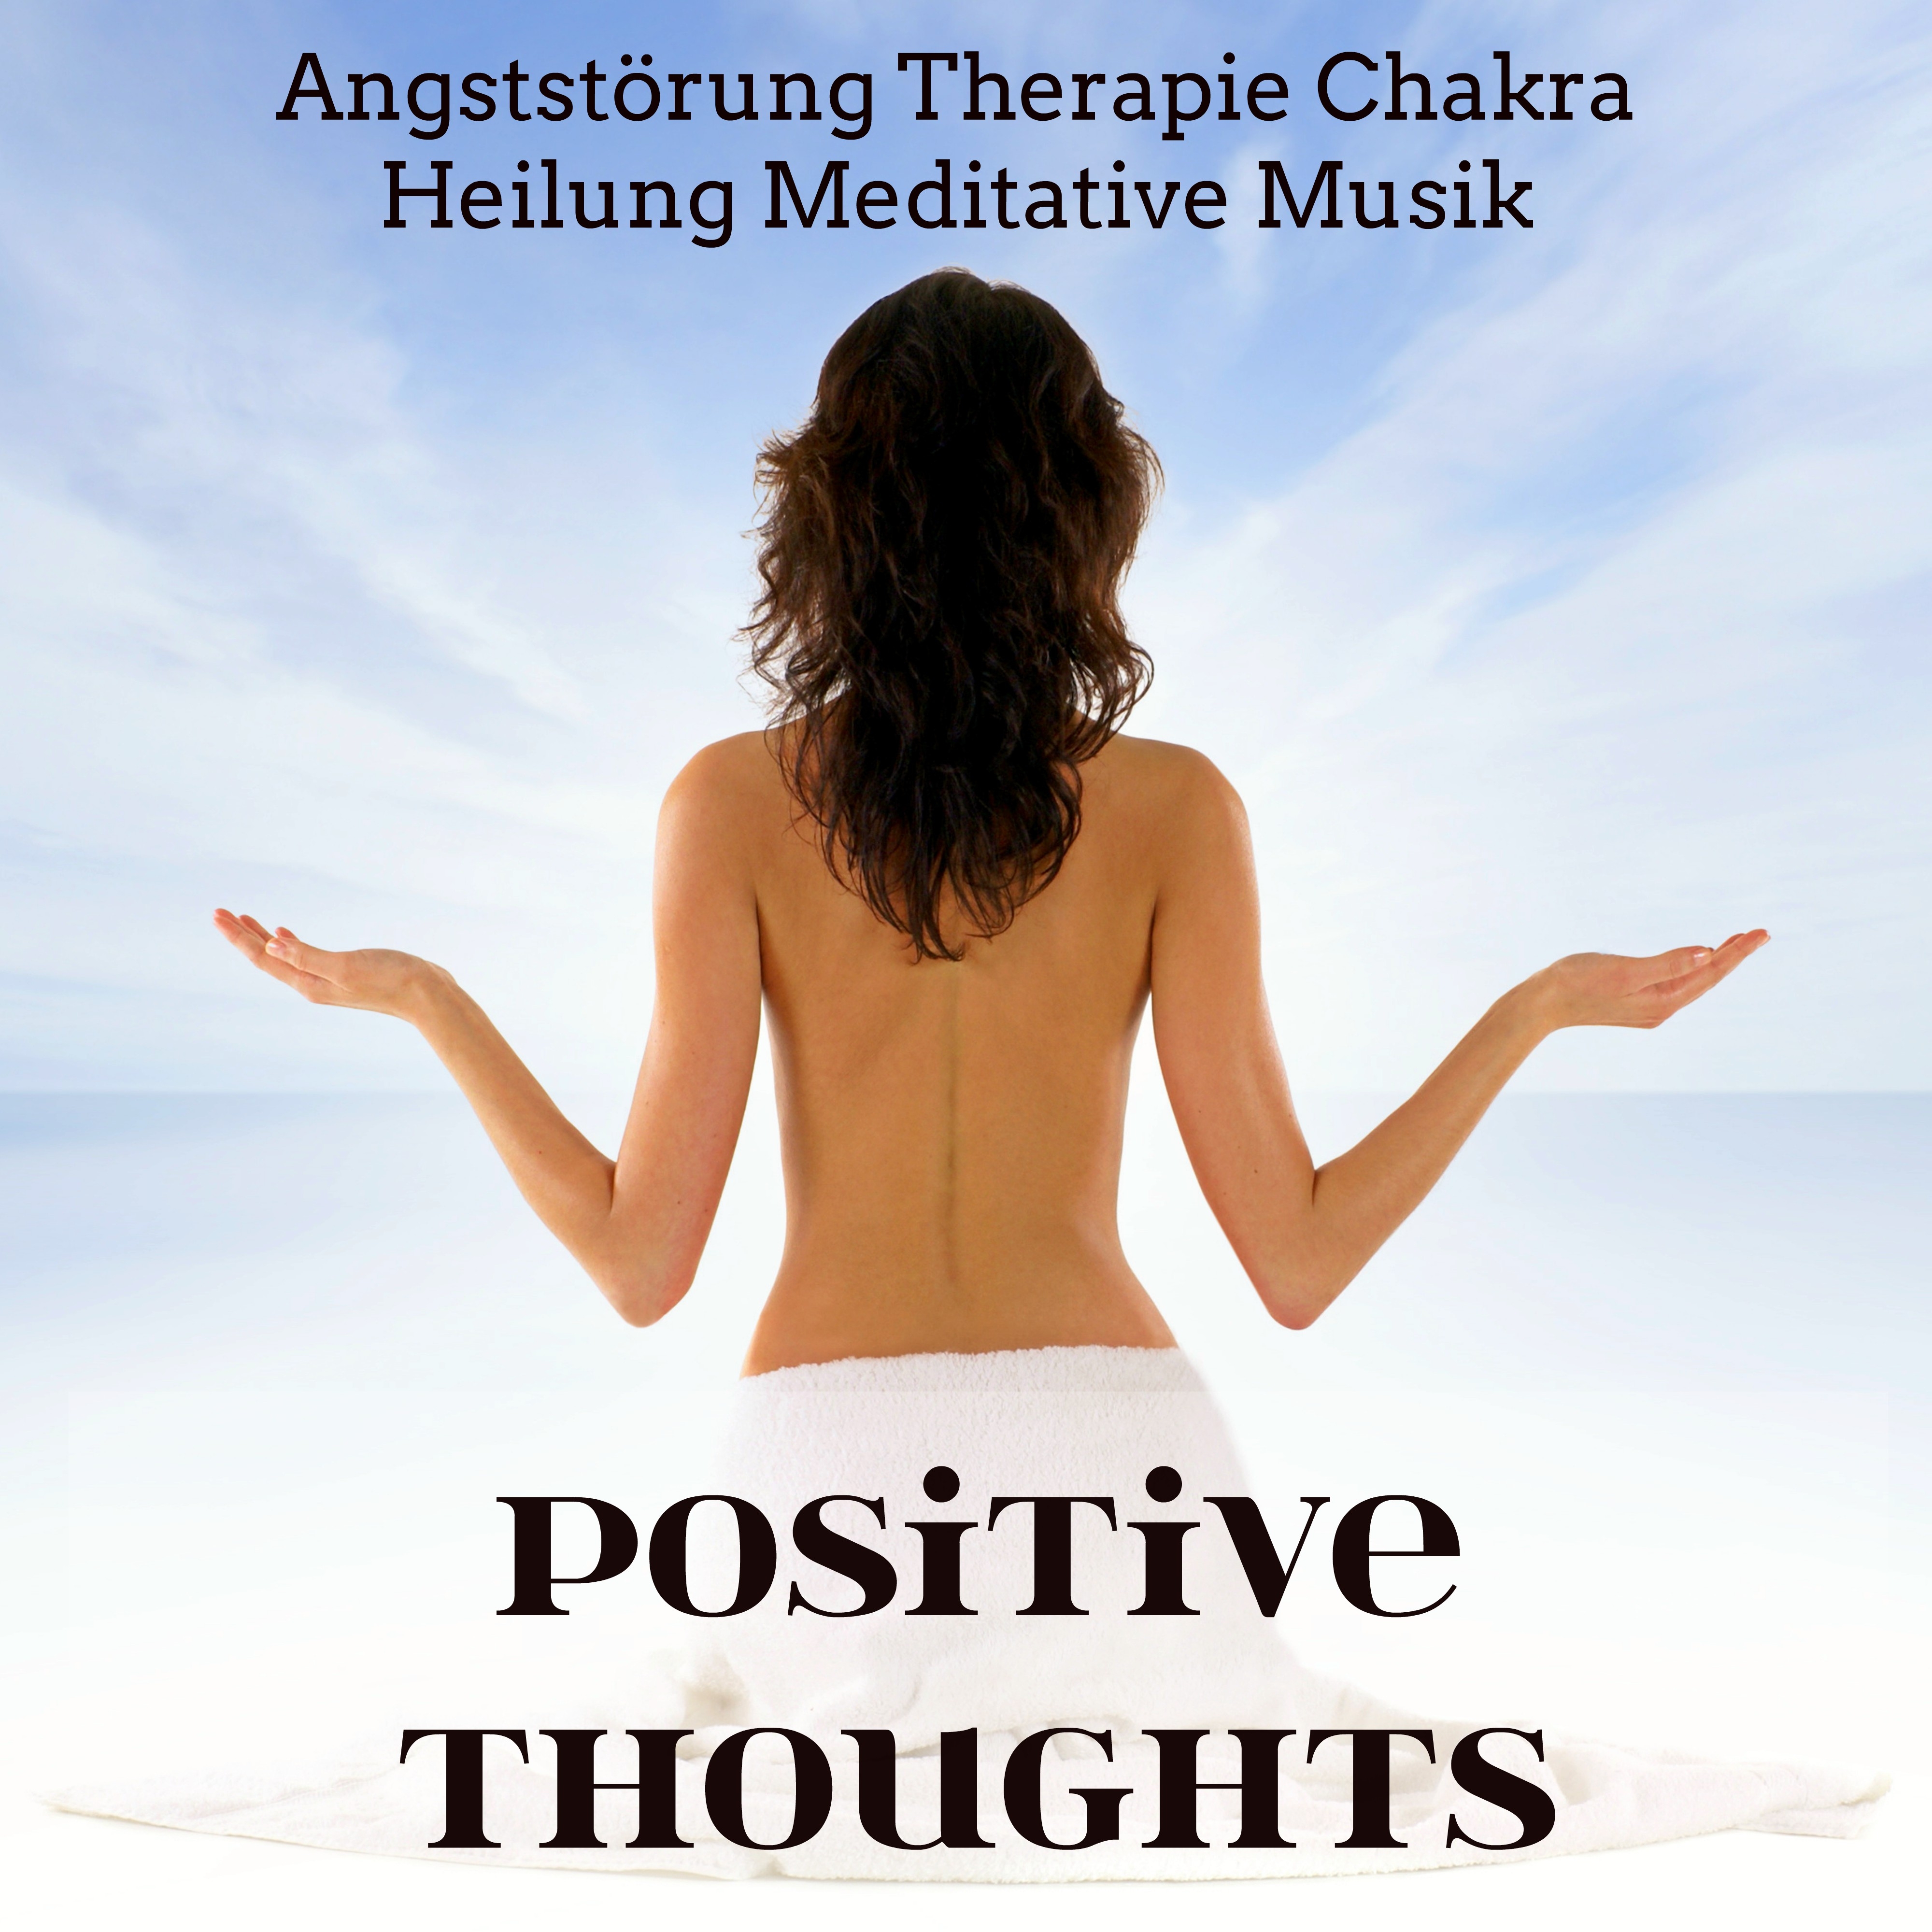 Positive Thoughts - Angststörung Therapie Chakra Heilung Meditative Musik für Tiefenentspannung mit Natur Instrumental Geräusche